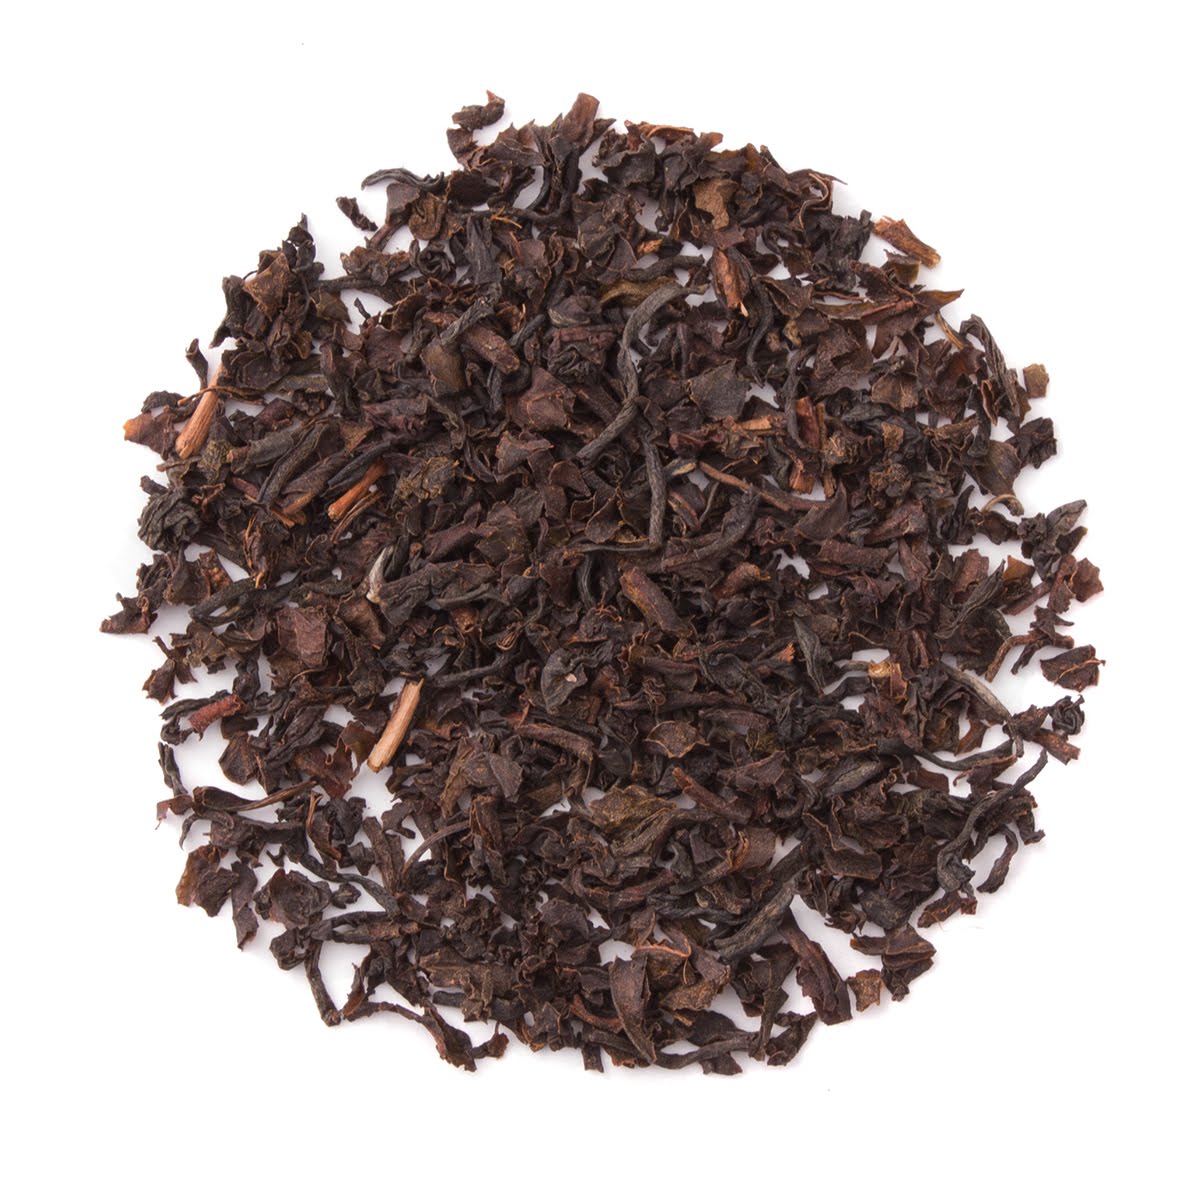 Organic English Breakfast - Premium Loose Leaf Black Tea - Heavenly Tea Leaves